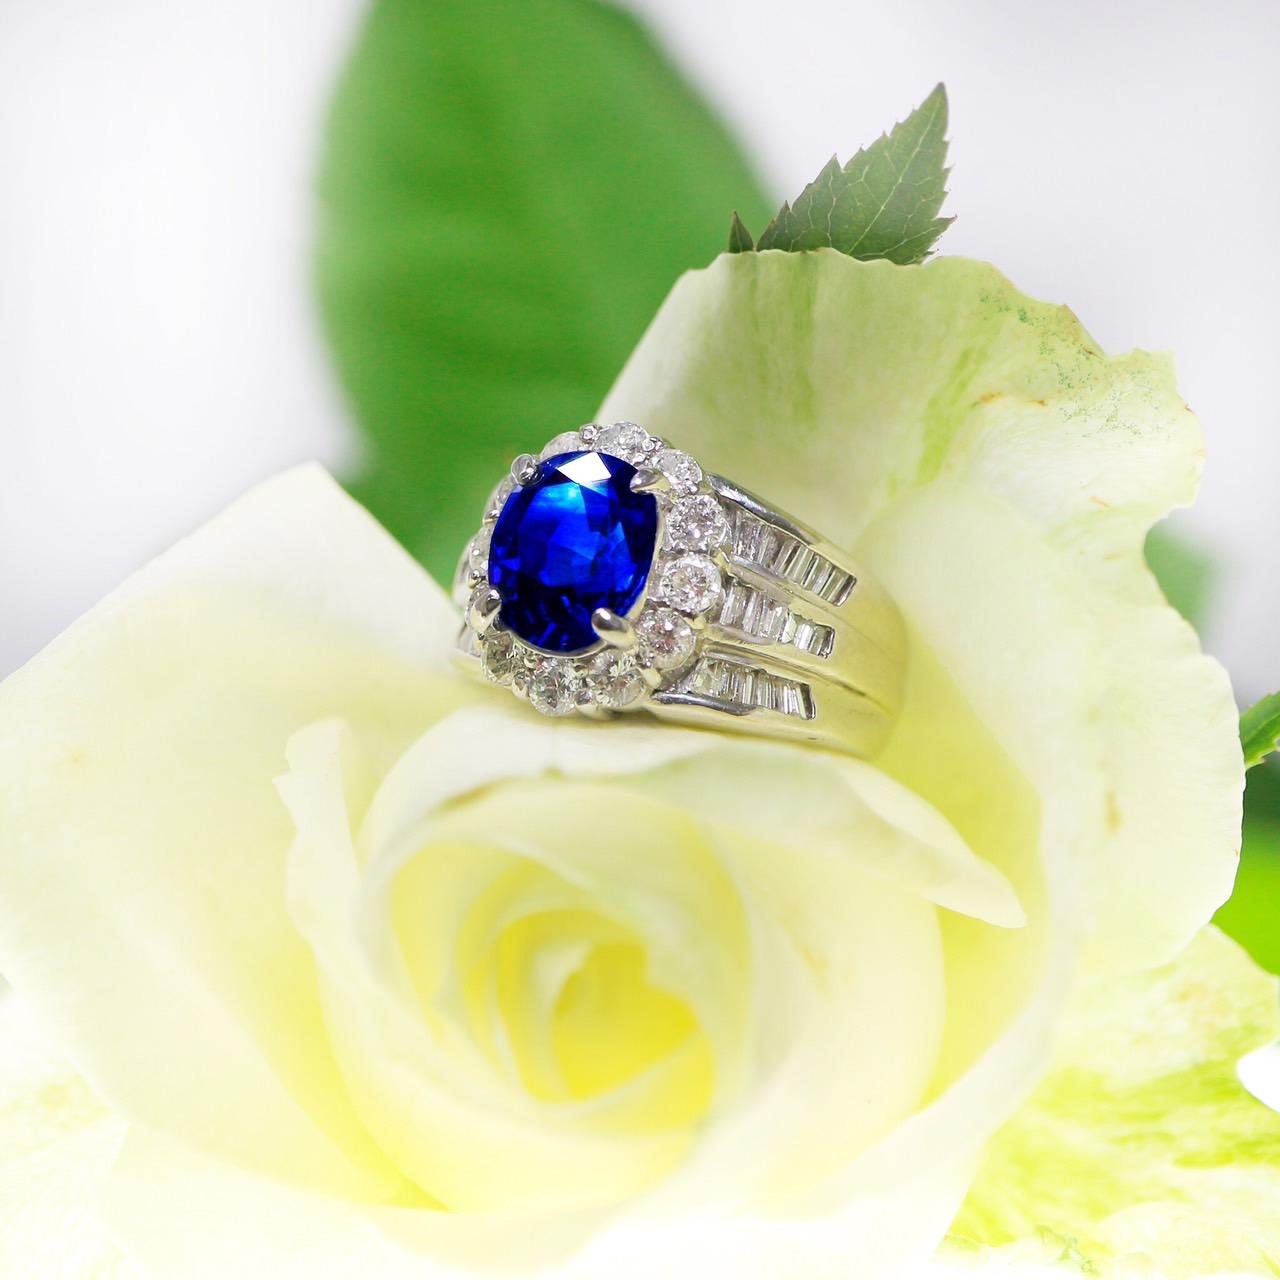 *Certified PT900 3.30 ct Royal Blue Sapphire&Diamonds Antique Art Deco Engagement Ring* (Bague de fiançailles Art Déco)
Saphir bleu royal naturel certifié par l'AIGS pesant 3,30 ct, serti sur un anneau en platine blanc PT900 avec des diamants